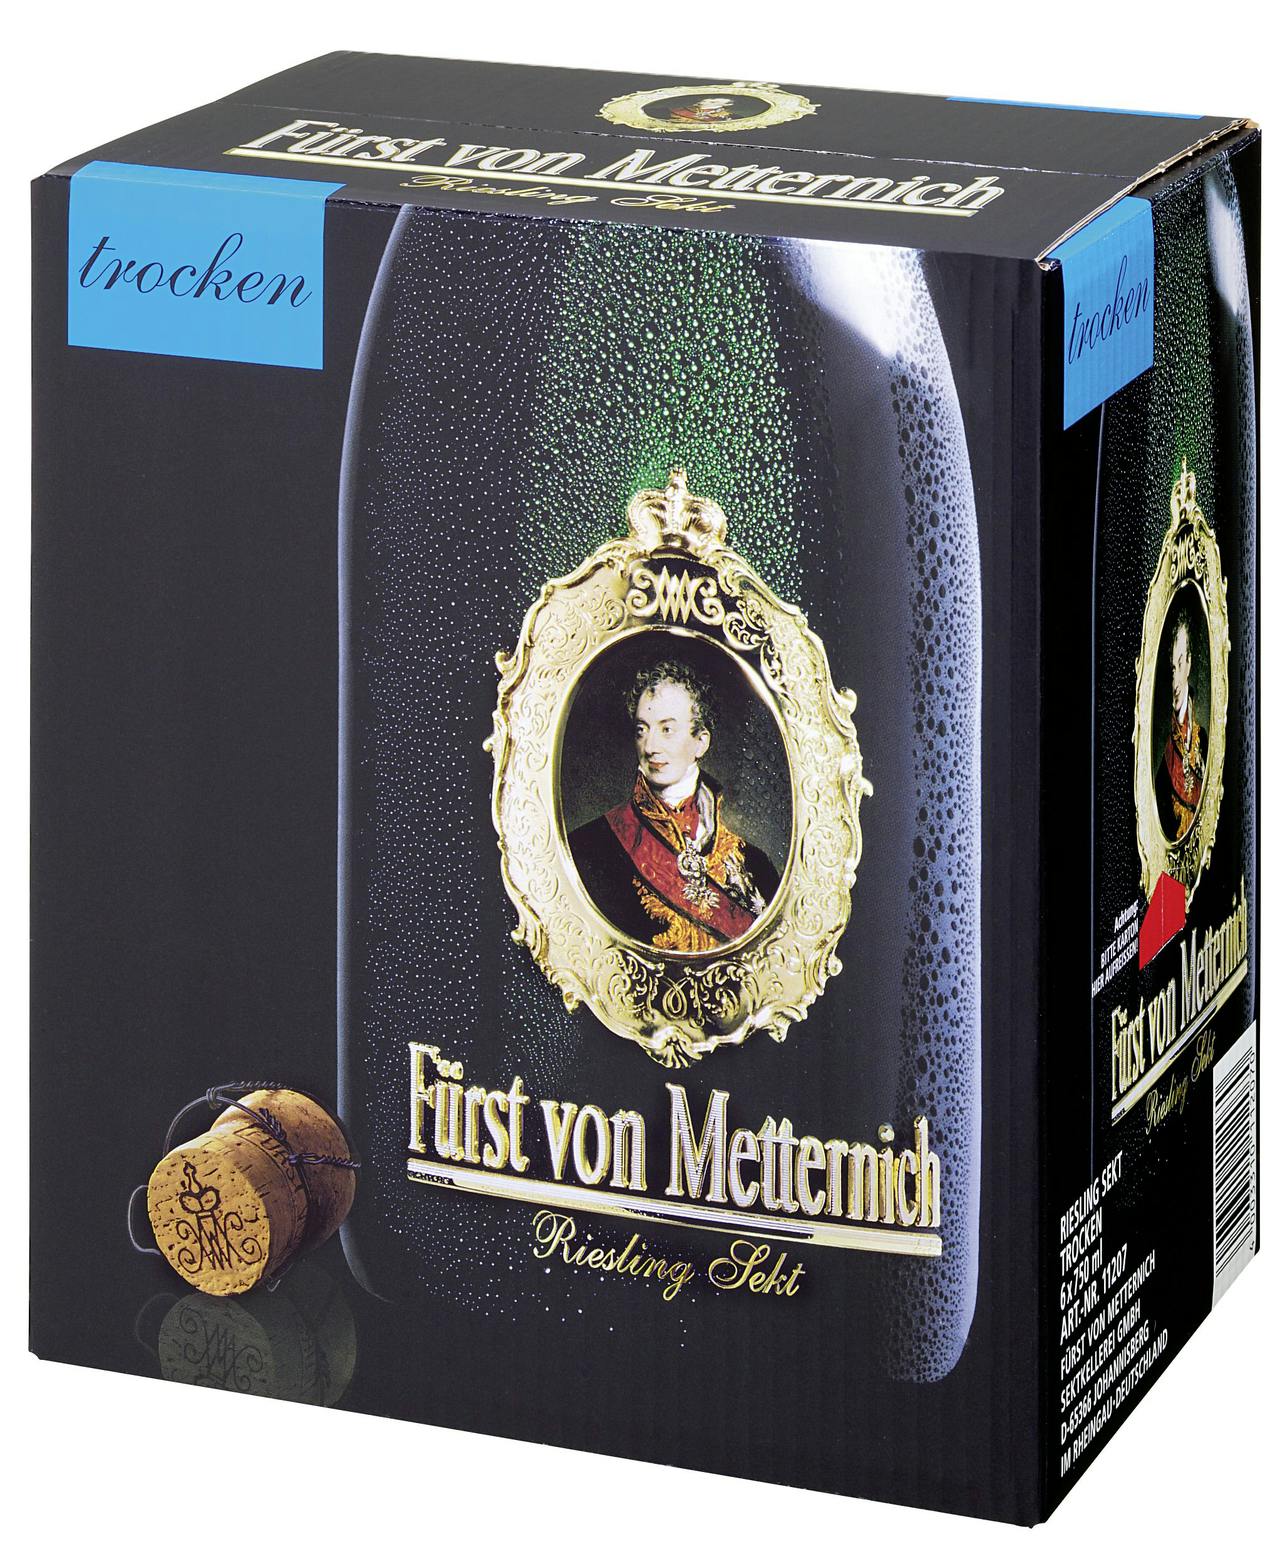 Fürst von Metternich Riesling Sekt Flaschen l) x | 0,75 l Marktplatz (4,5 6 METRO trocken